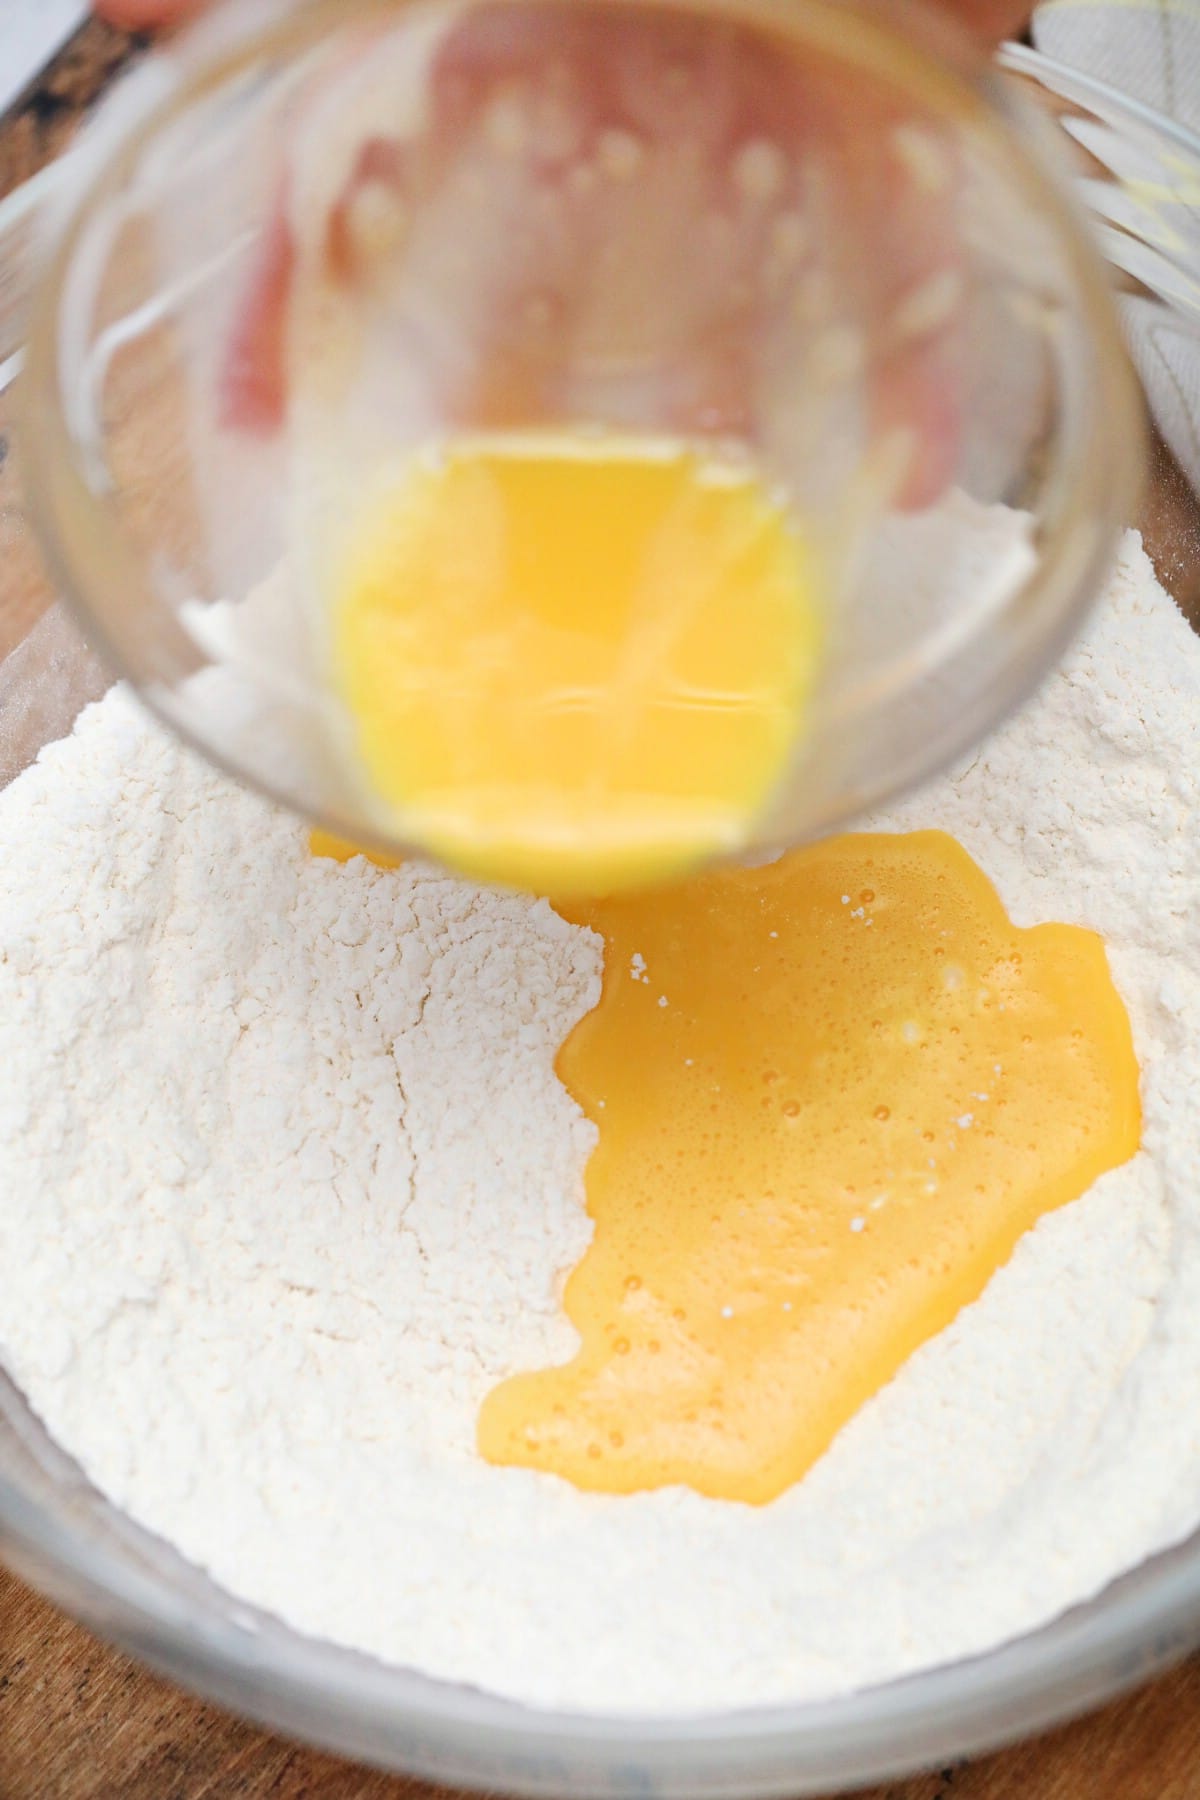 Adding eggs to flour